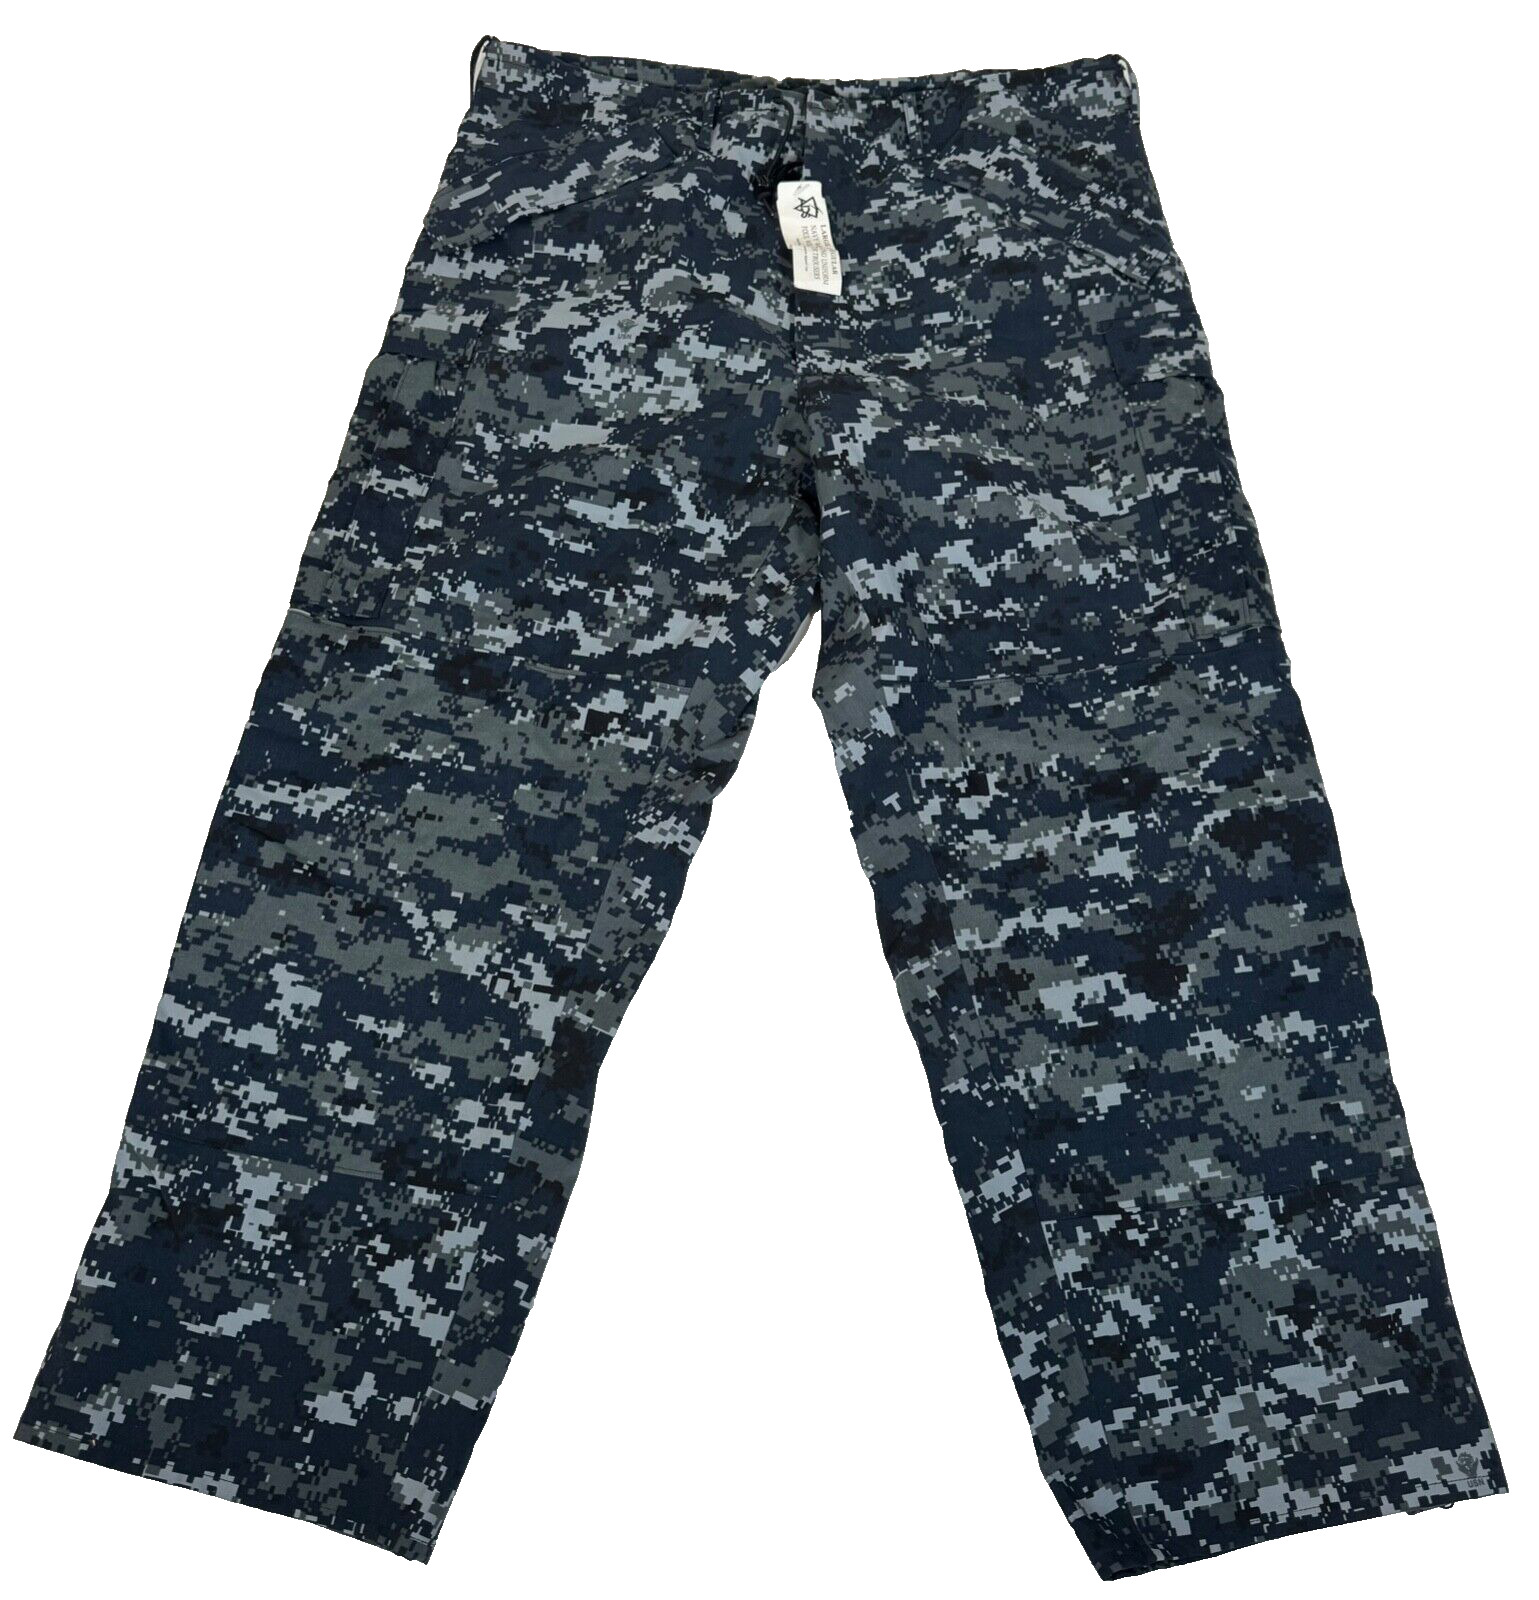 New USN Navy Working Uniform NWU Type I Foul Weather GoreTex Pants Large Regular